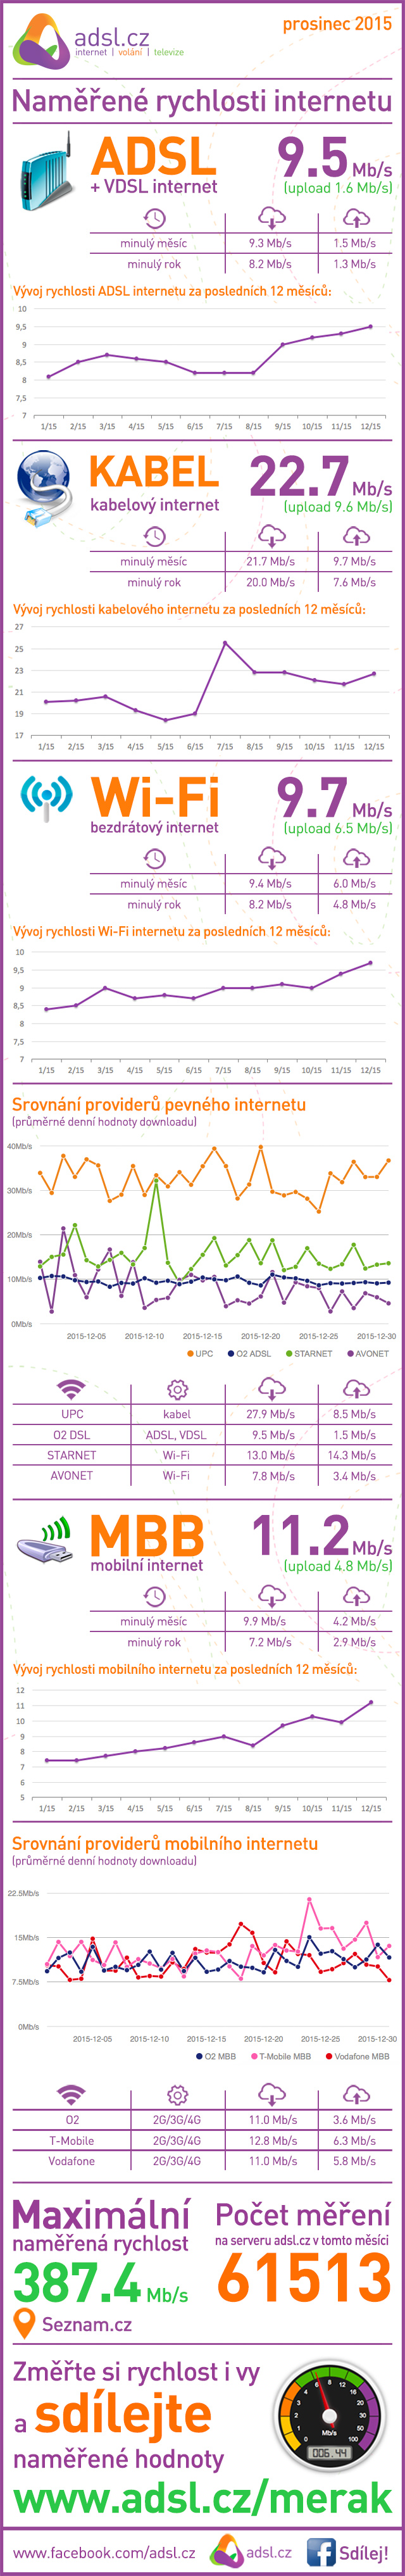 Rychlost internetu za prosinec 2015